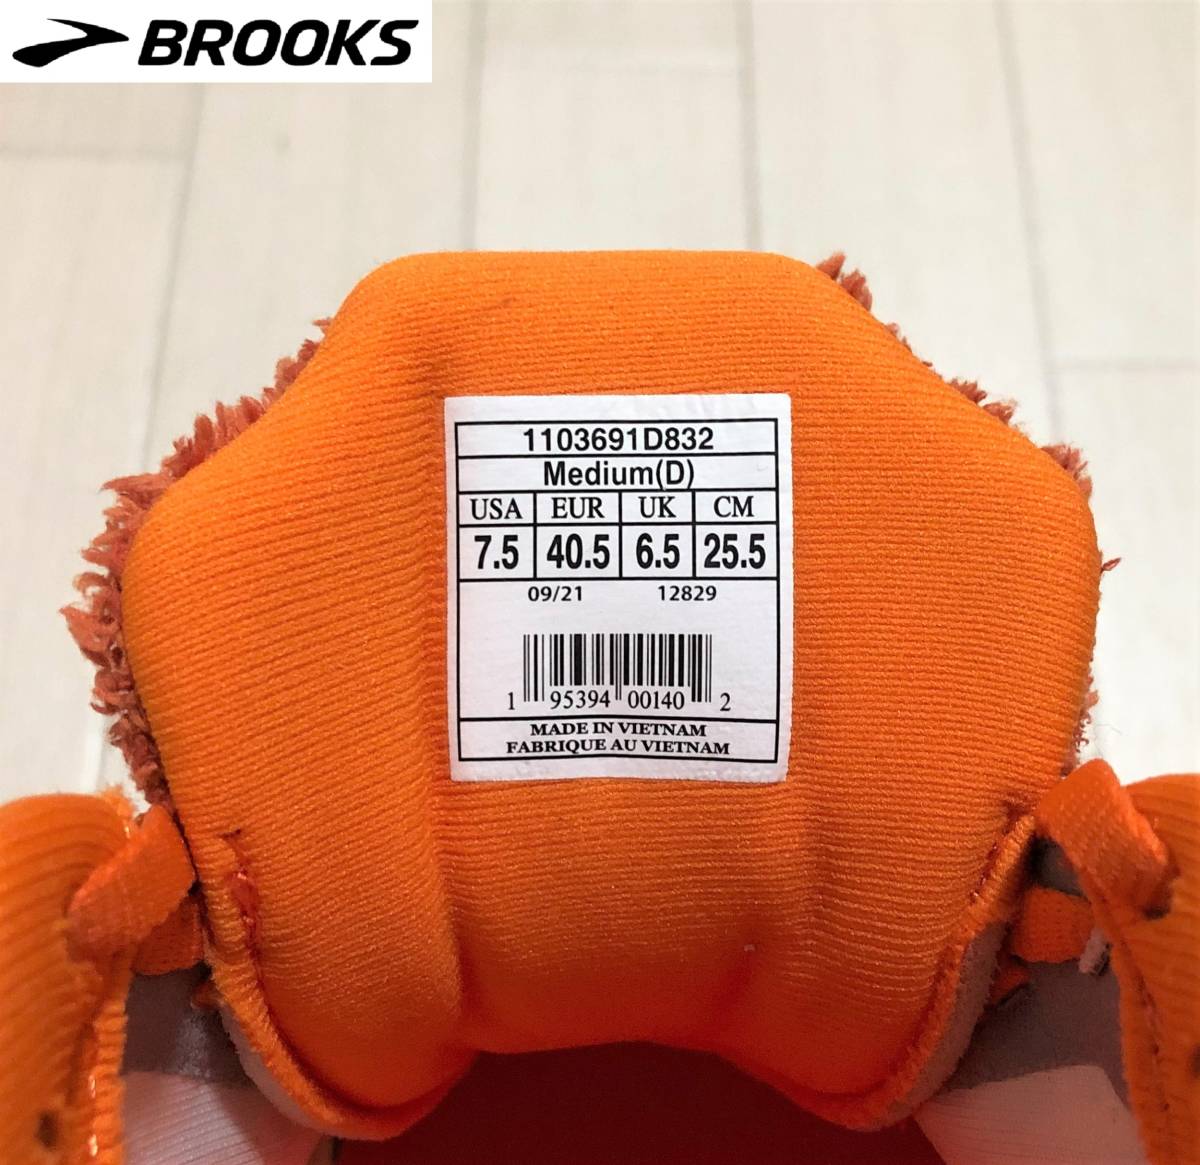 BROOKS ブルックス Ghost 14 Turkey Trot ゴースト 14 トルコトロット メンズ ランニング シューズ スニーカー 運動靴 25.5cm オレンジ_画像9